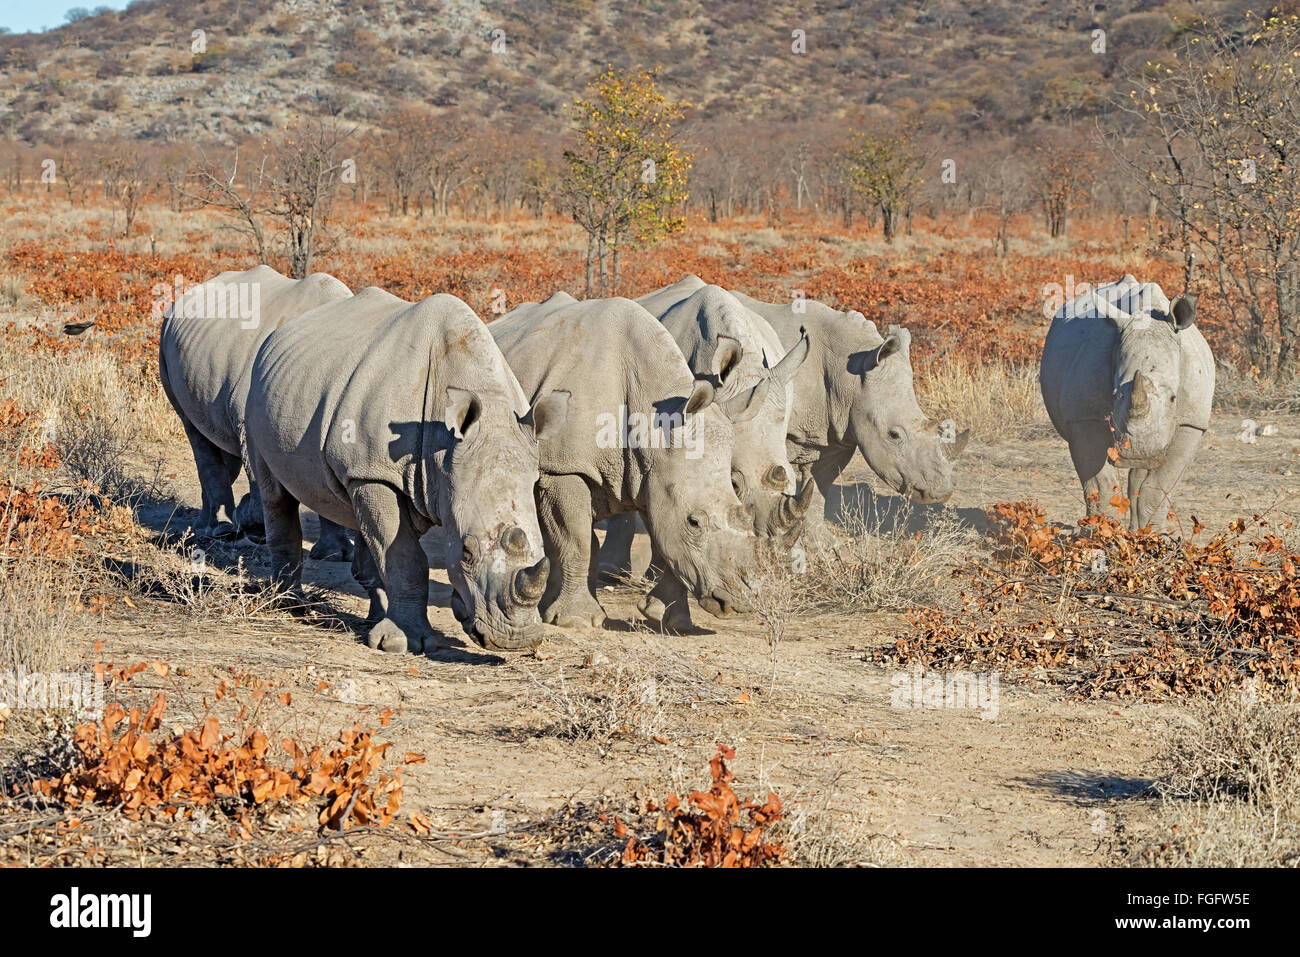 Cinco de rinoceronte blanco (Ceratotherium simum) en su ambiente seco y polvoriento en la Reserva de Caza de Ongava, Namibia, África Foto de stock